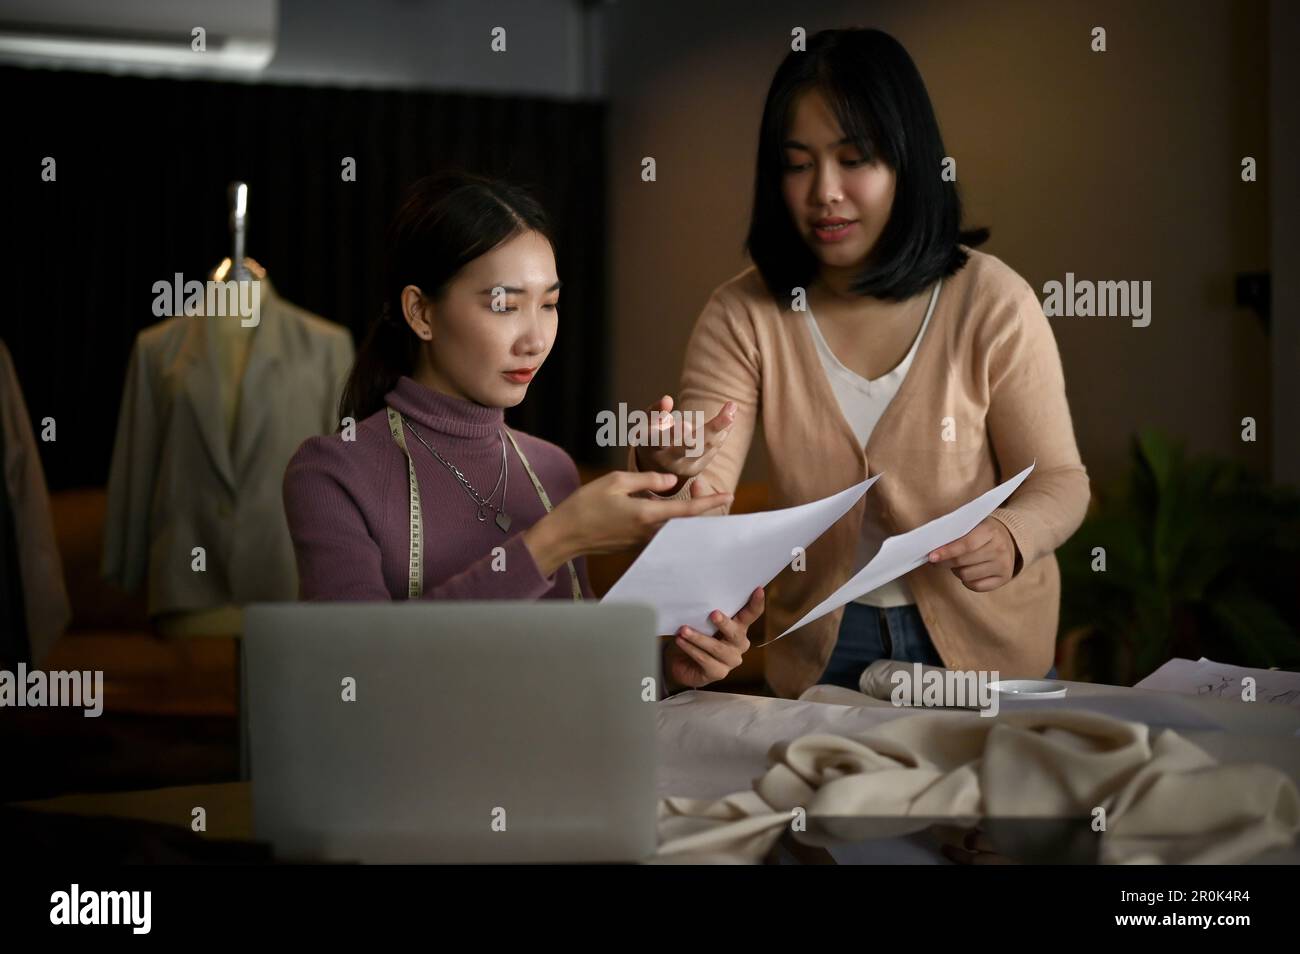 Deux stylistes ou tailleurs de mode asiatiques millénaires professionnels discutent de leur nouvelle collection et travaillent ensemble en studio. Banque D'Images